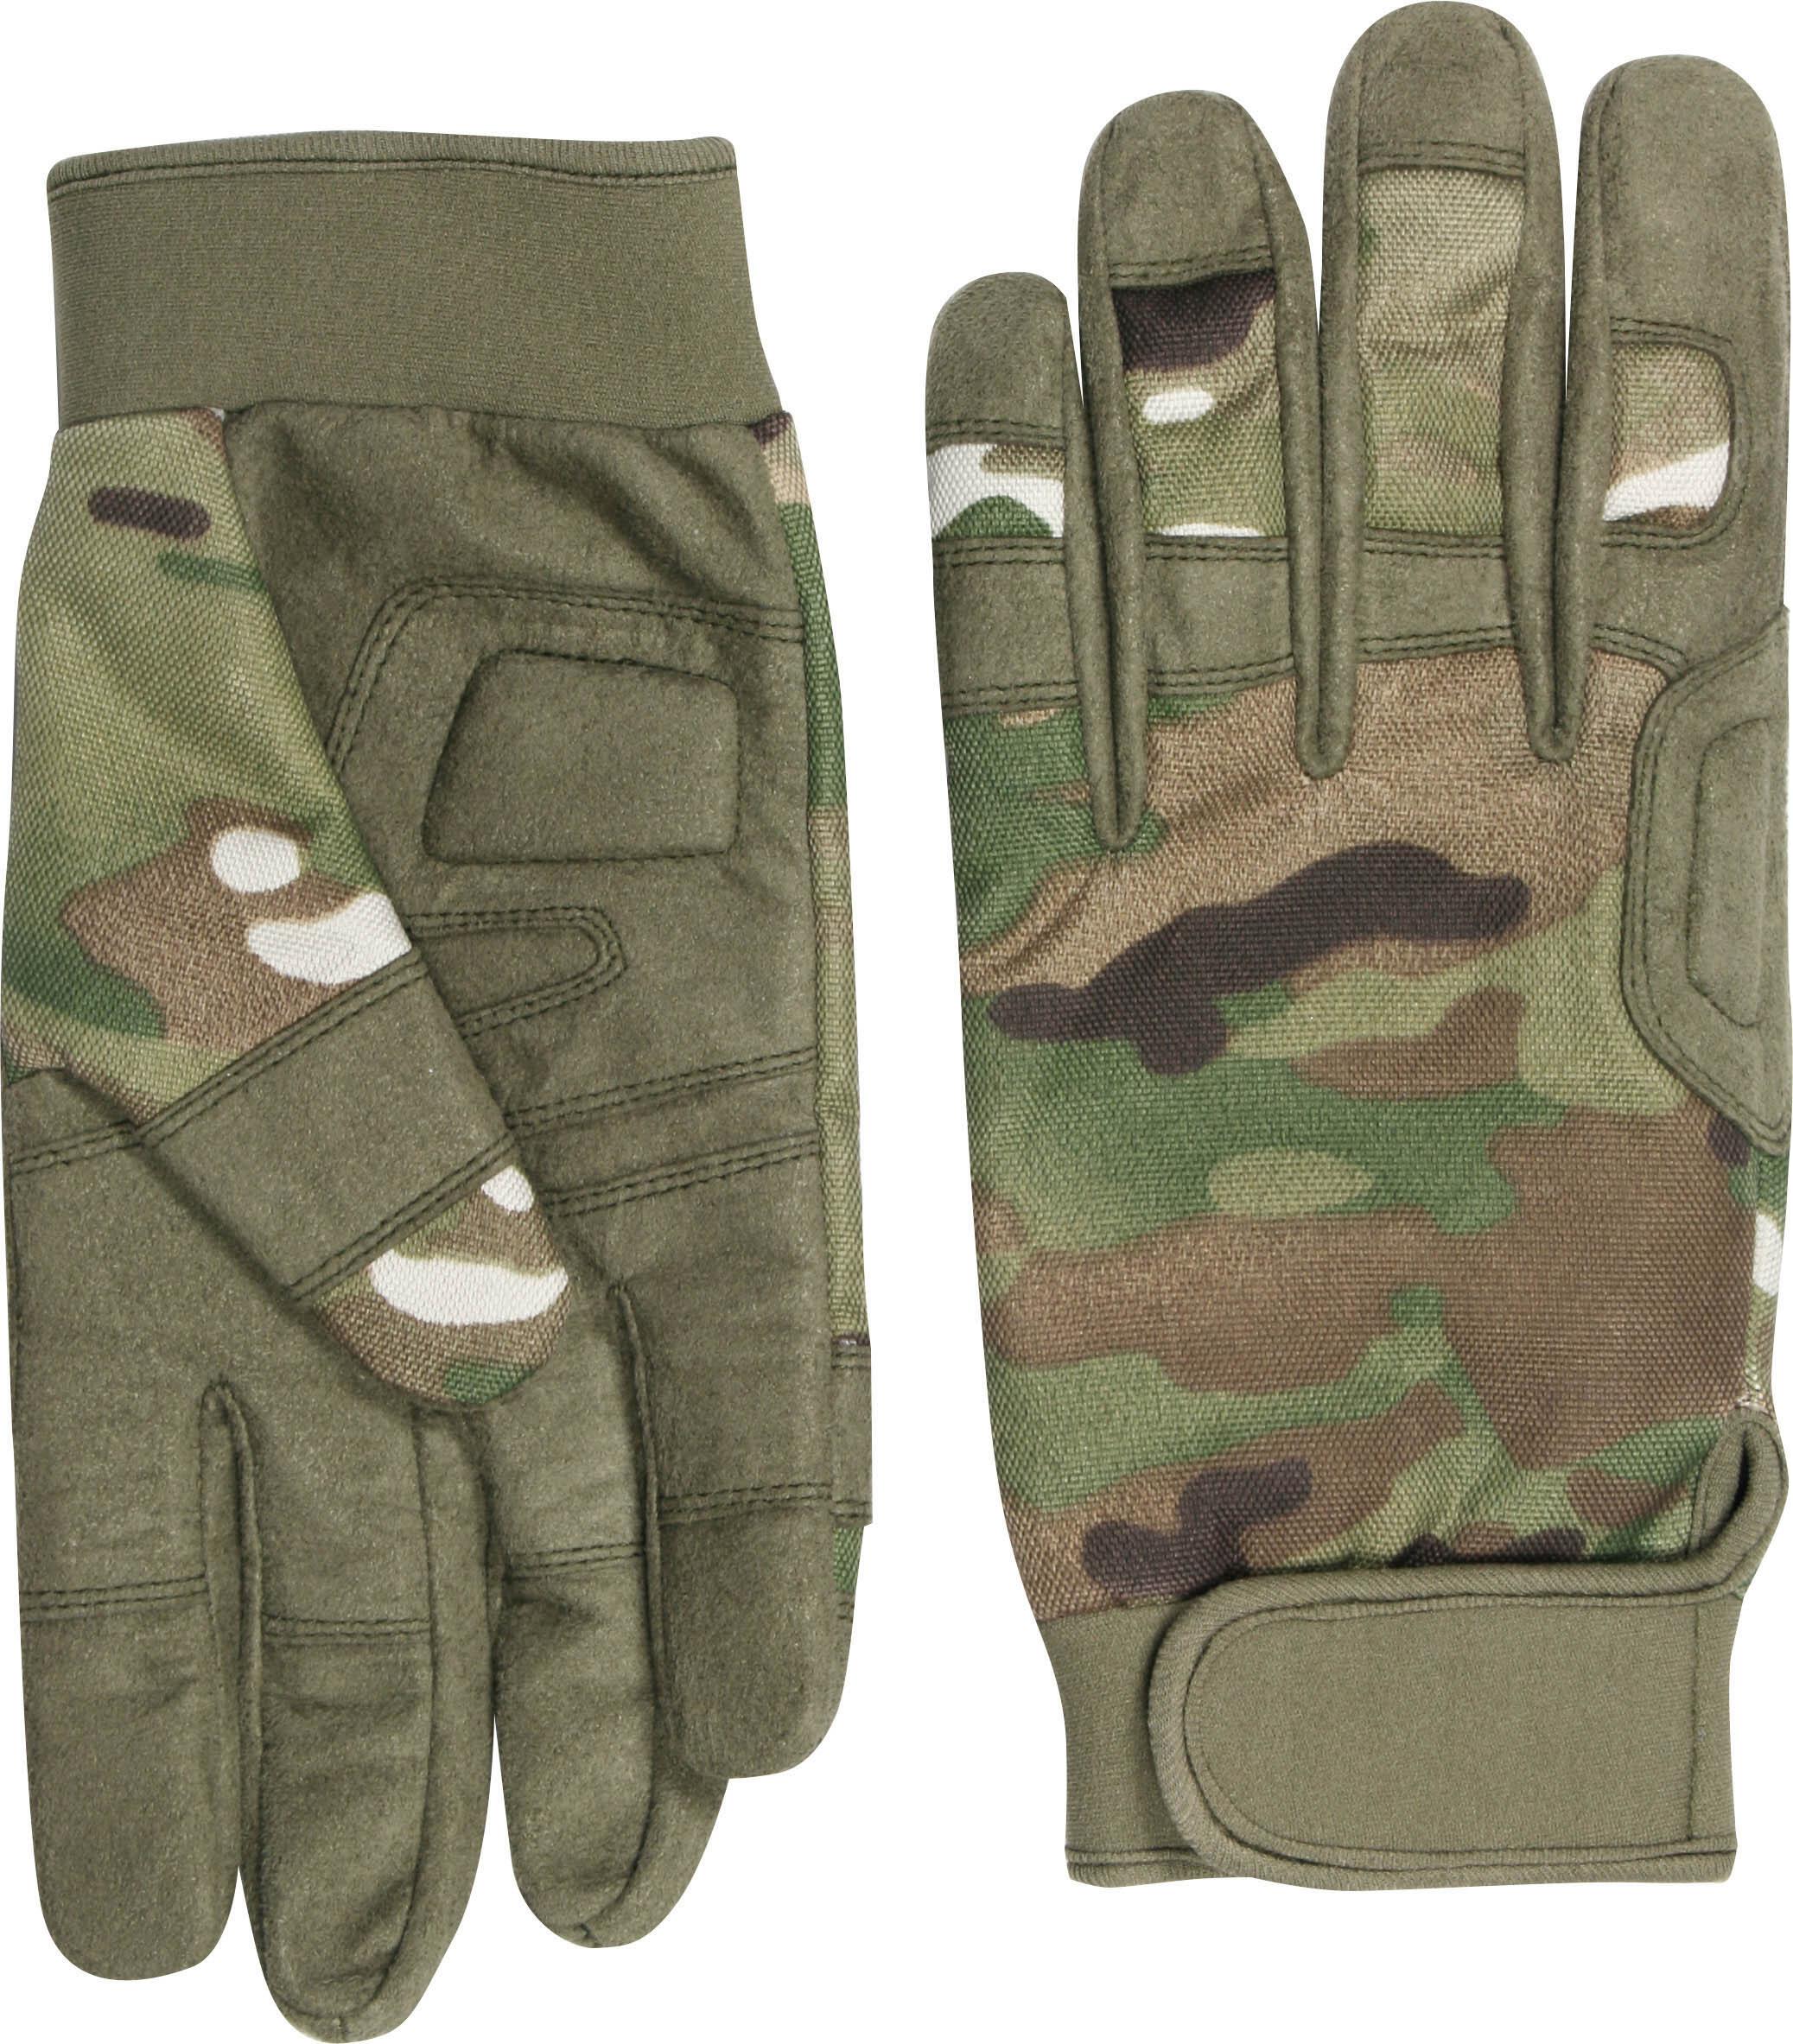 Viper Tactical SF Glove